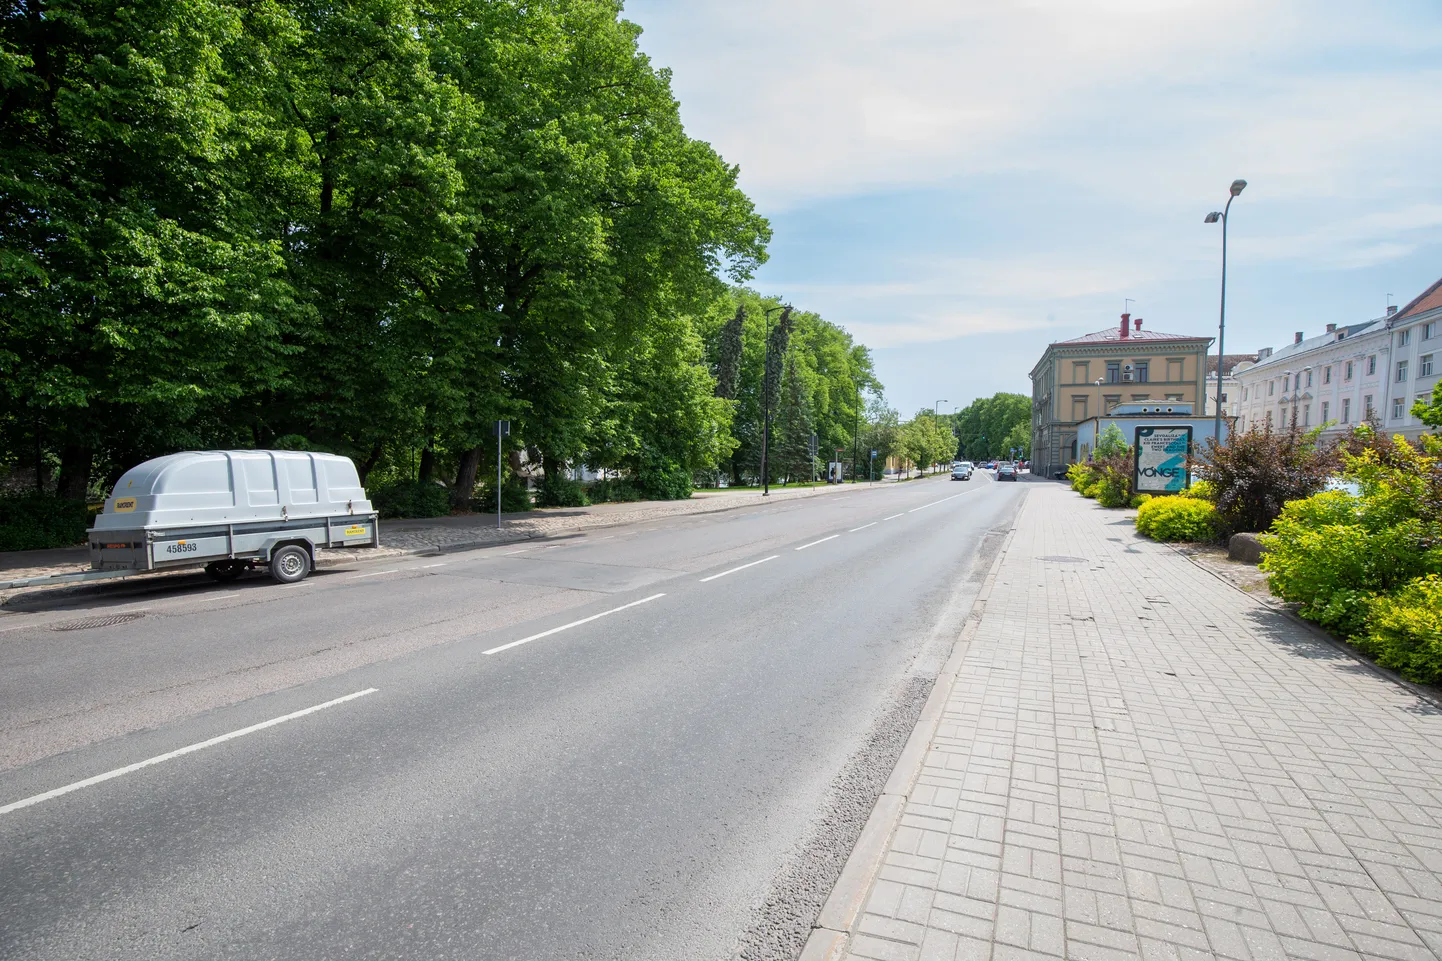 Vabaduse puiestee sulgub taas sõidukitele, sest 29. juunil avatakse seal koos Tartu linna päevaga autovabaduse puiestee.